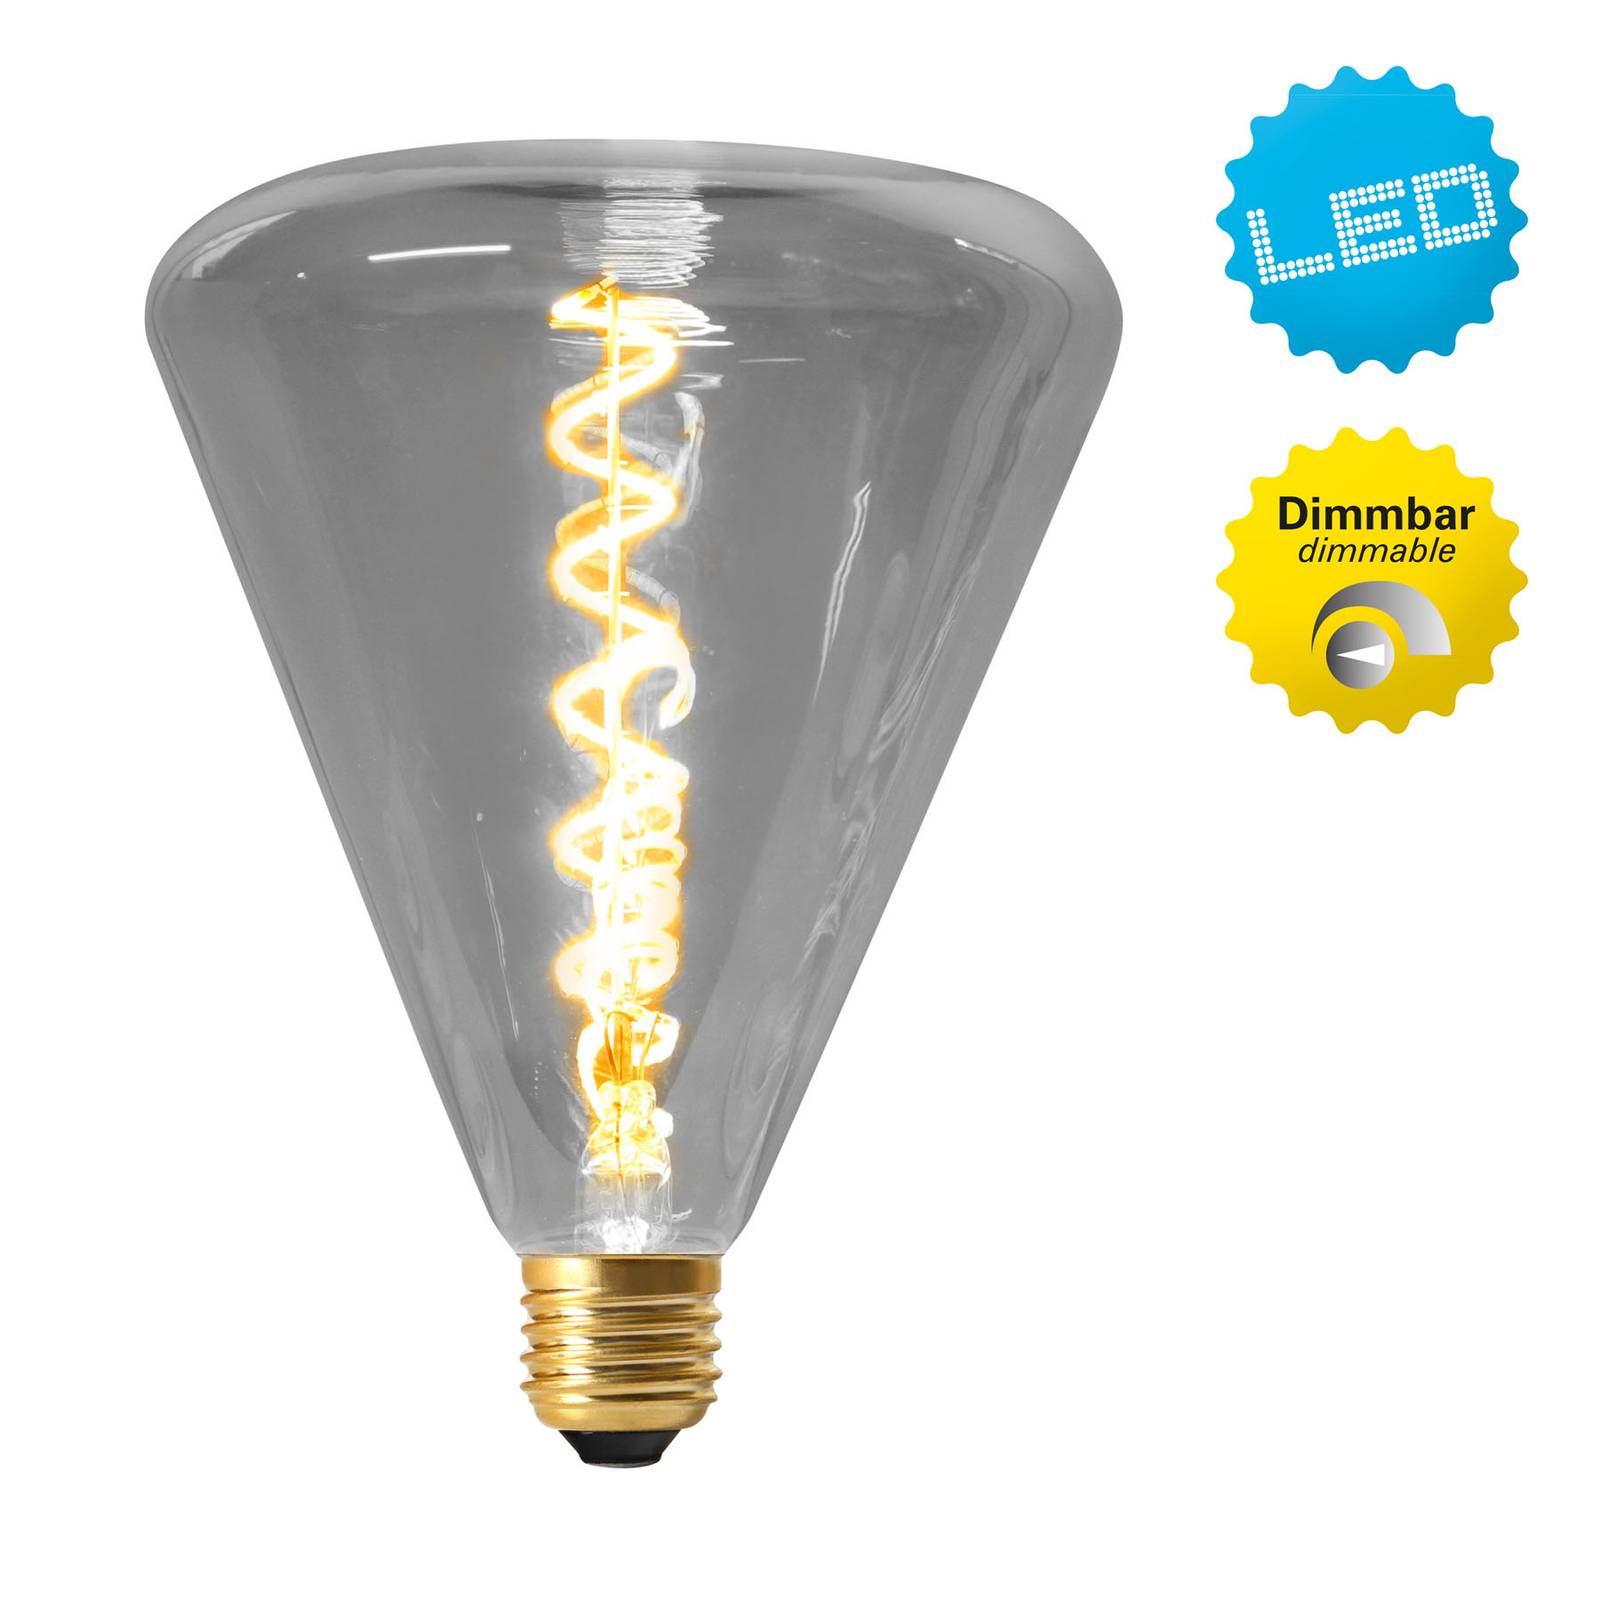 LED lámpa Dilly E27 4W 2200K dimm., szürke színez.